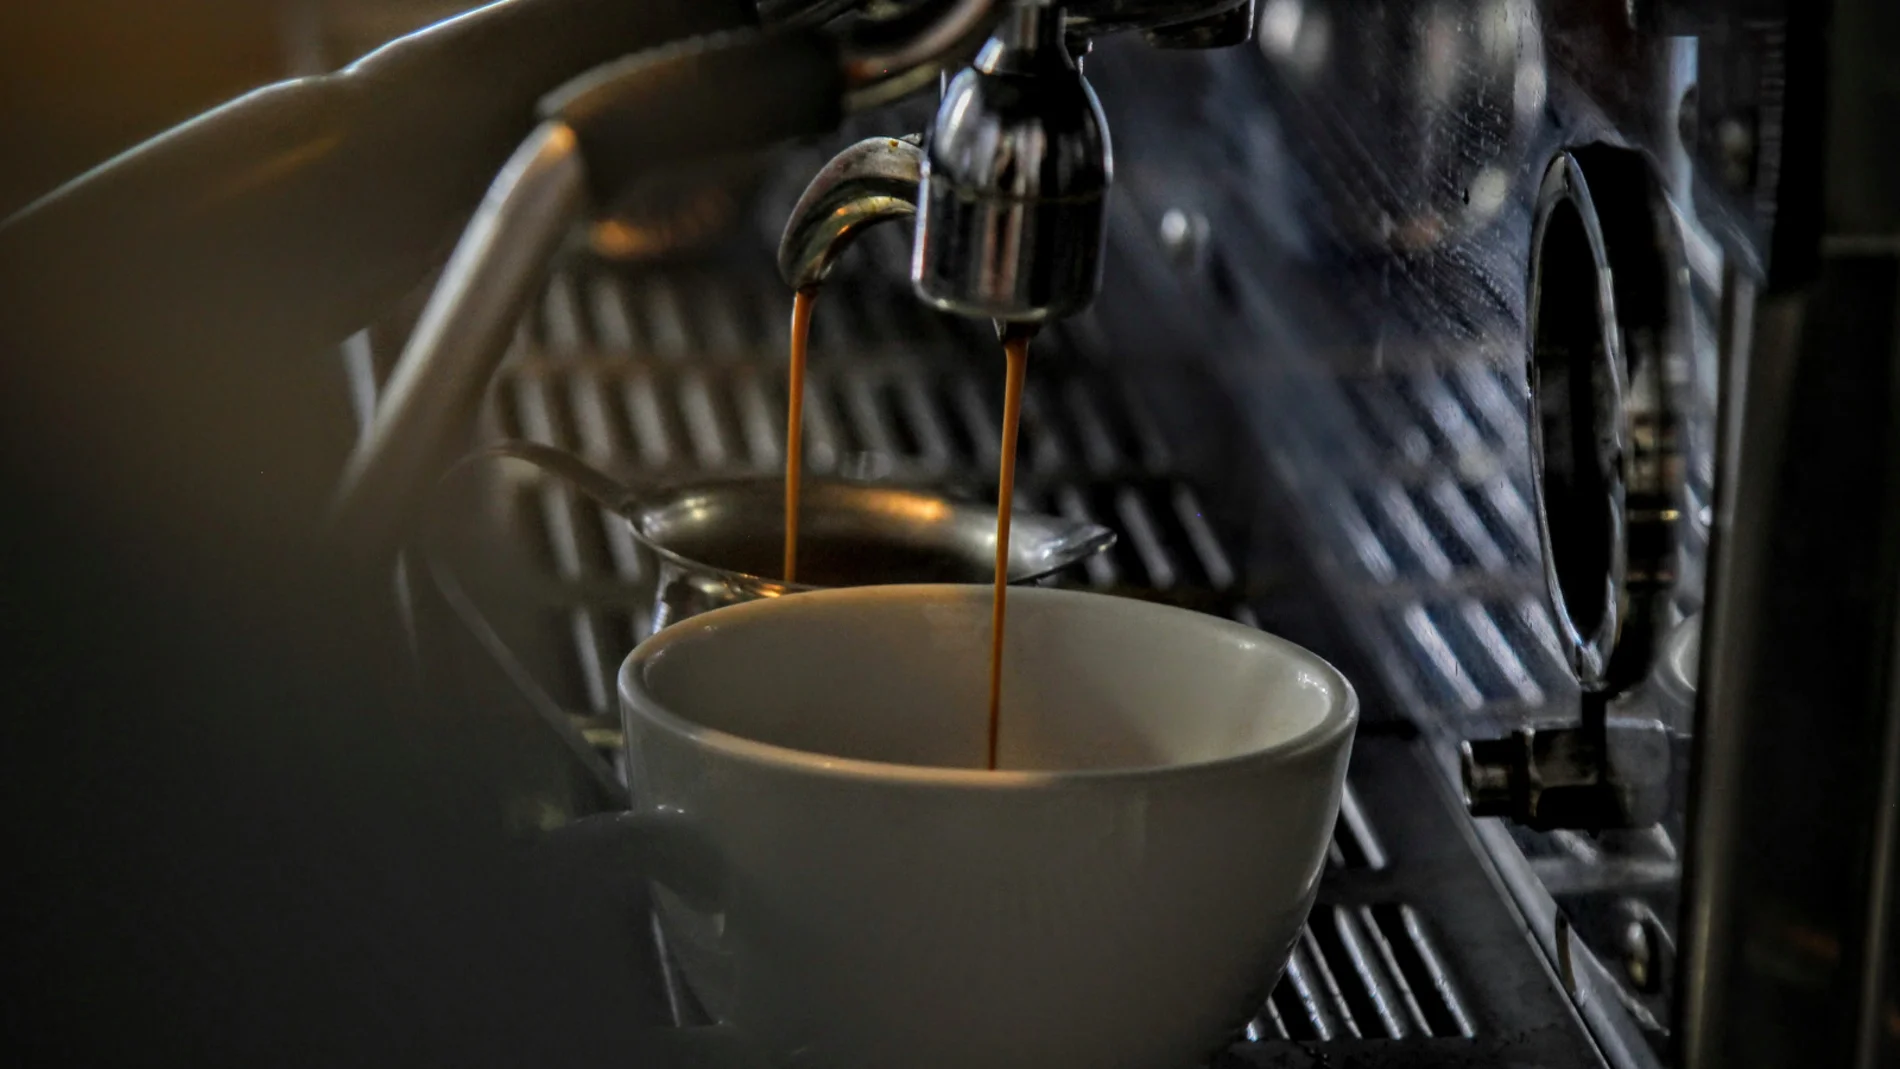 Café solo o café con leche: ¿por qué es mejor optar por lo simple?